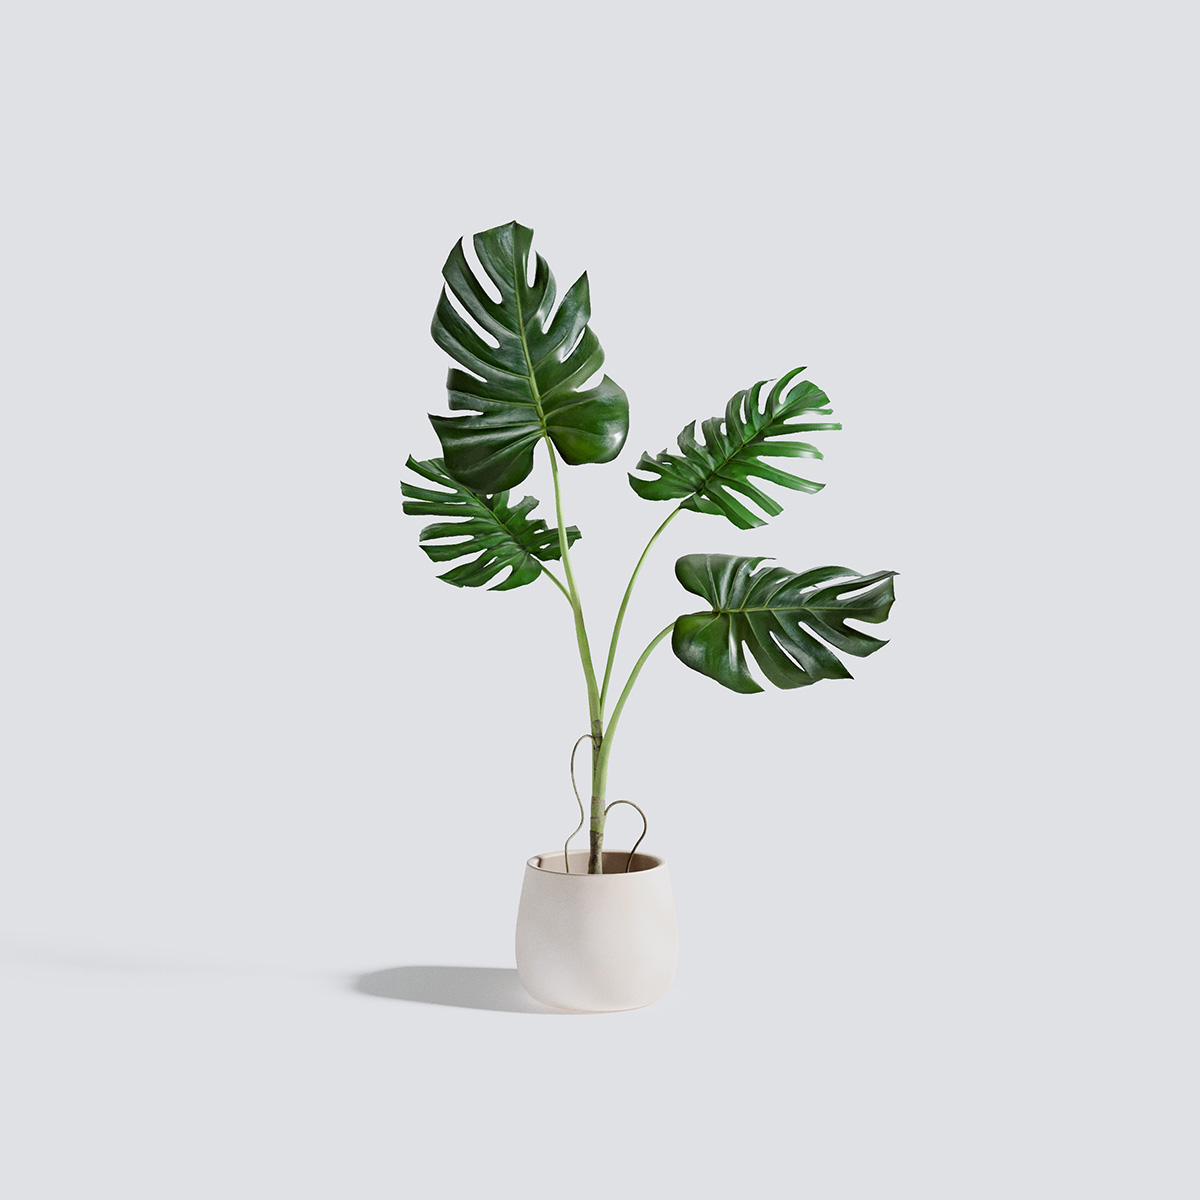 مدل سه بعدی گل و گیاهان آپارتمانی - 19